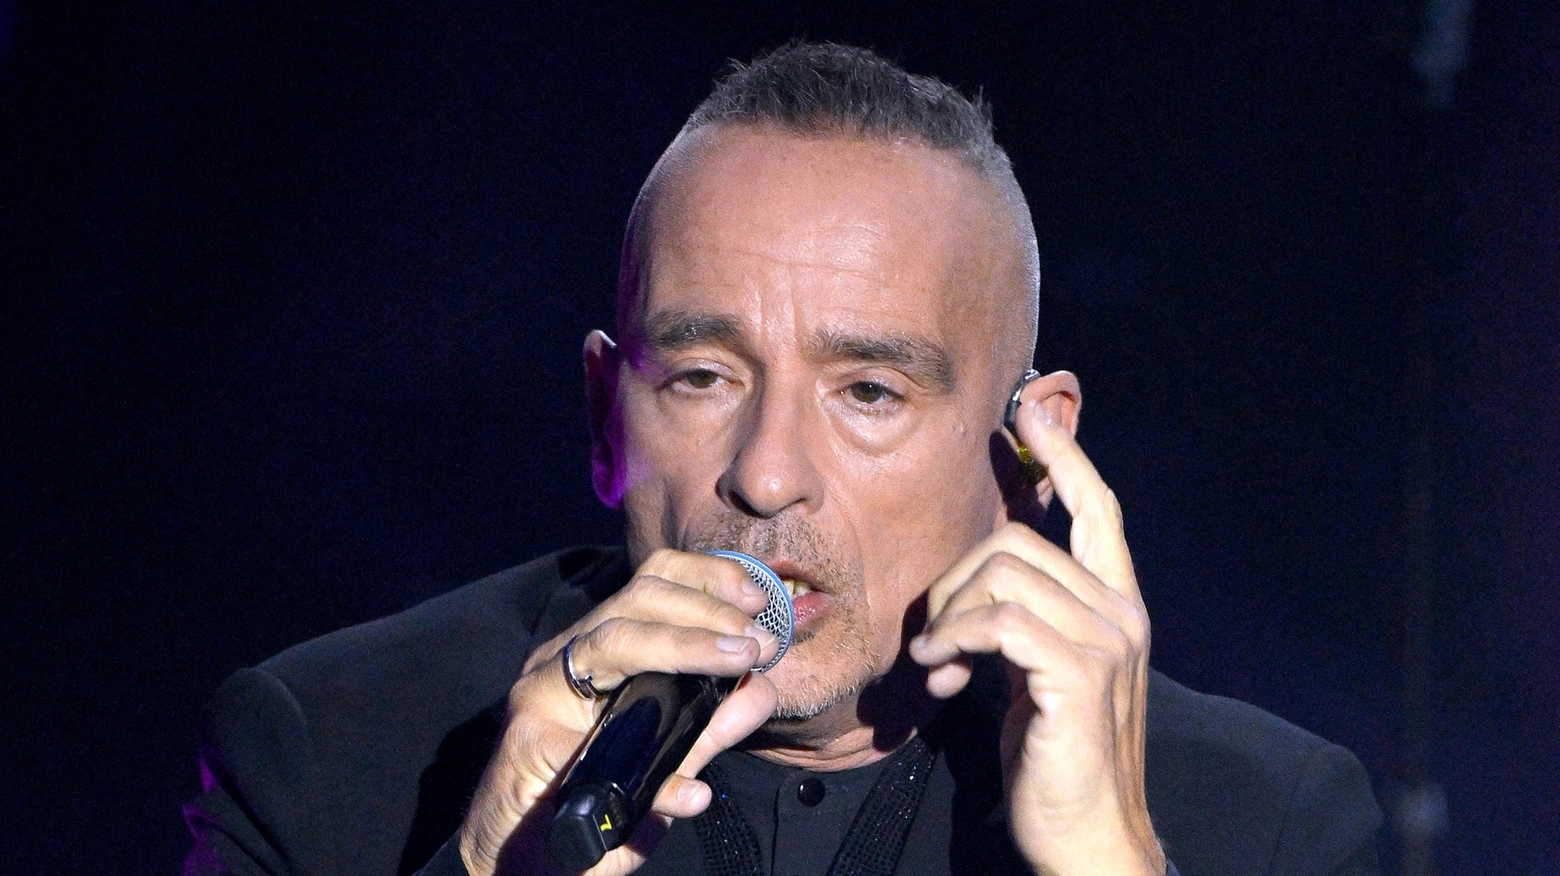 Ospite del festival di Sanremo, canta “Terra promessa” e poi con parole chiare e semplici lancia l'appello: “Pace”